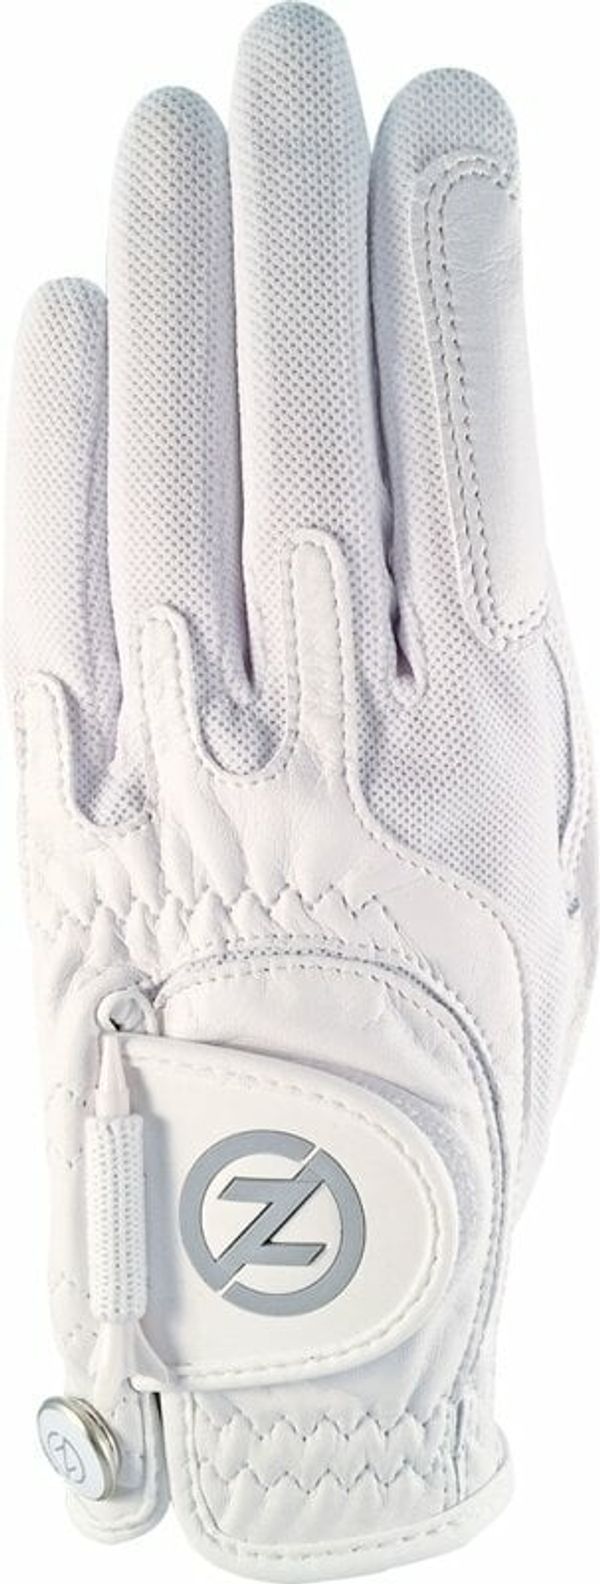 Zero Friction Zero Friction Cabretta Elite Ladies Golf Glove Left Hand White One Size